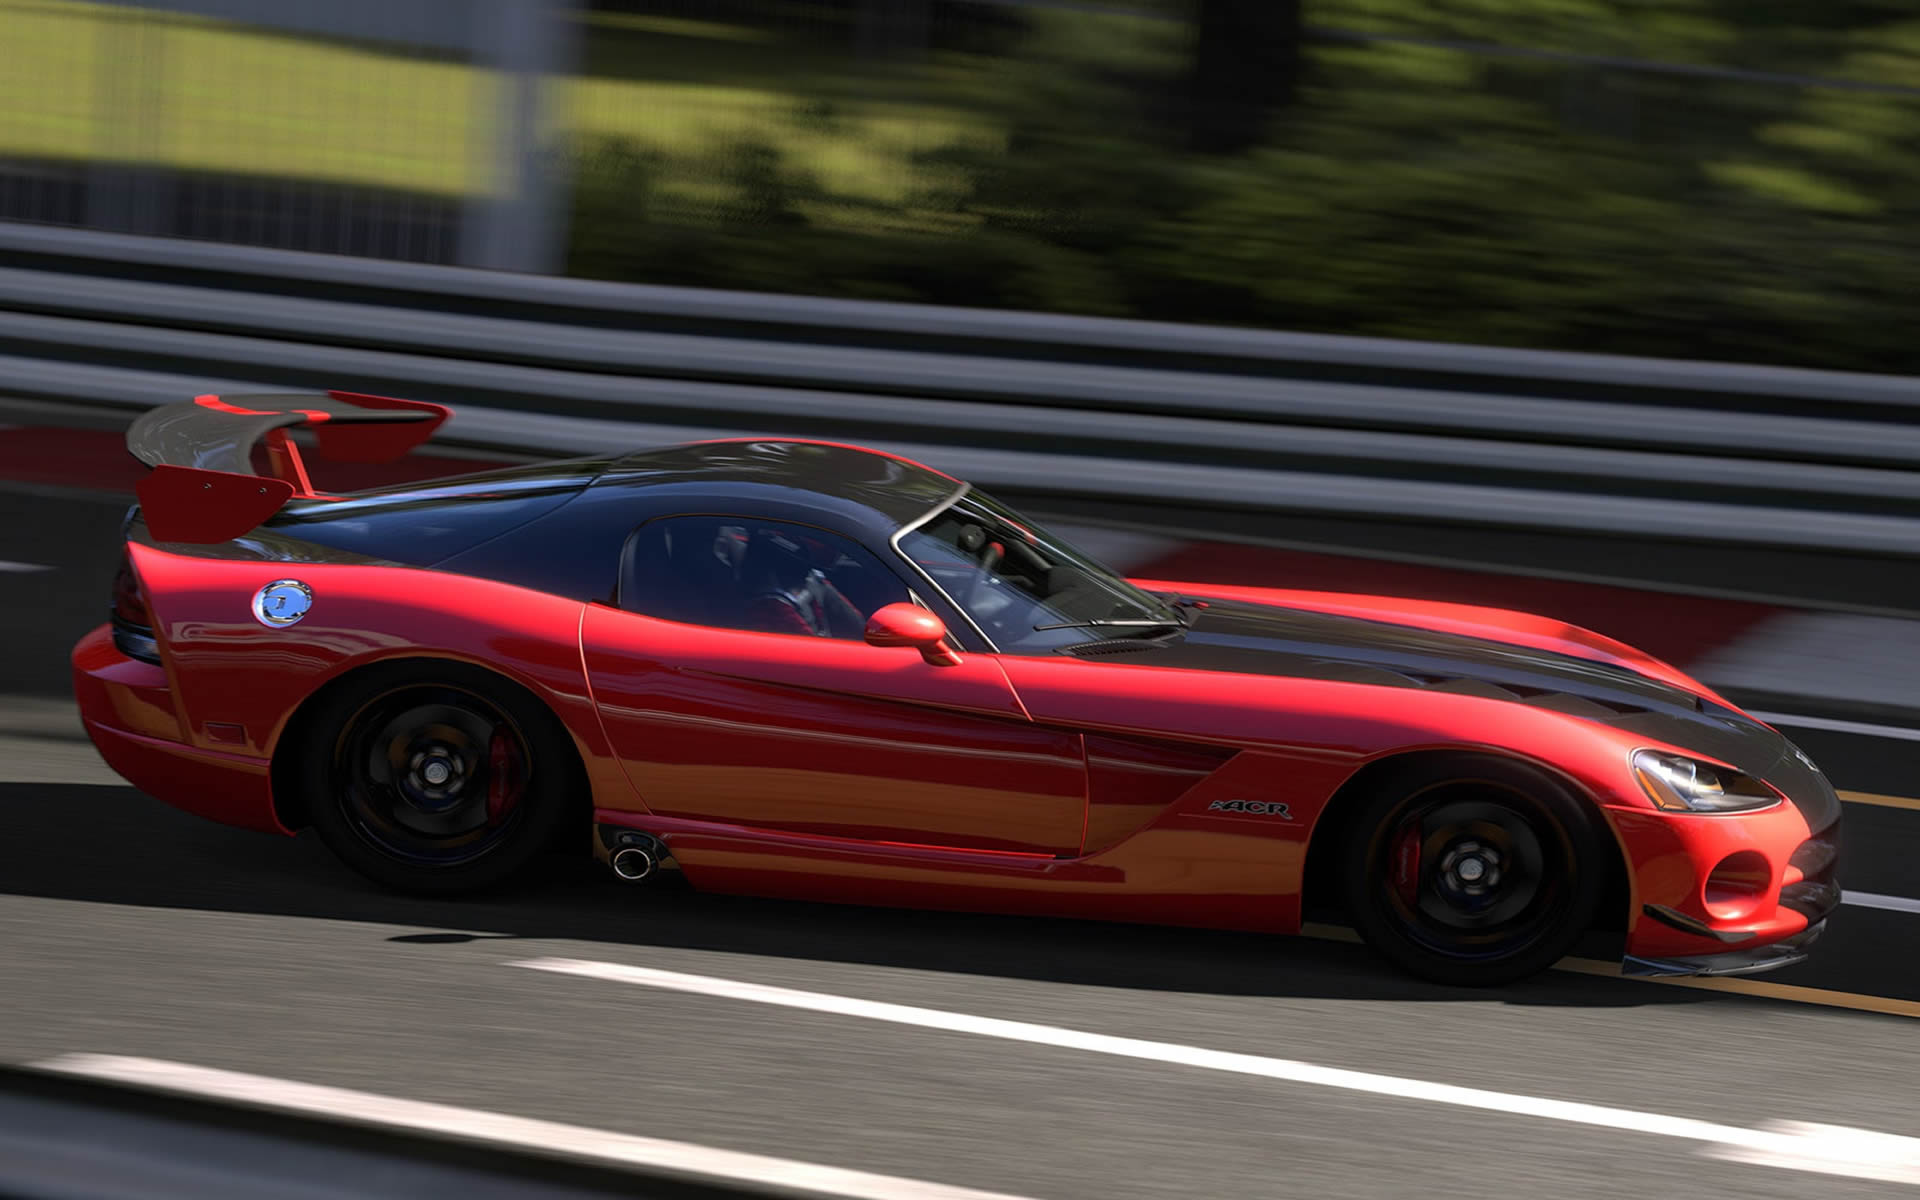 viper racing game